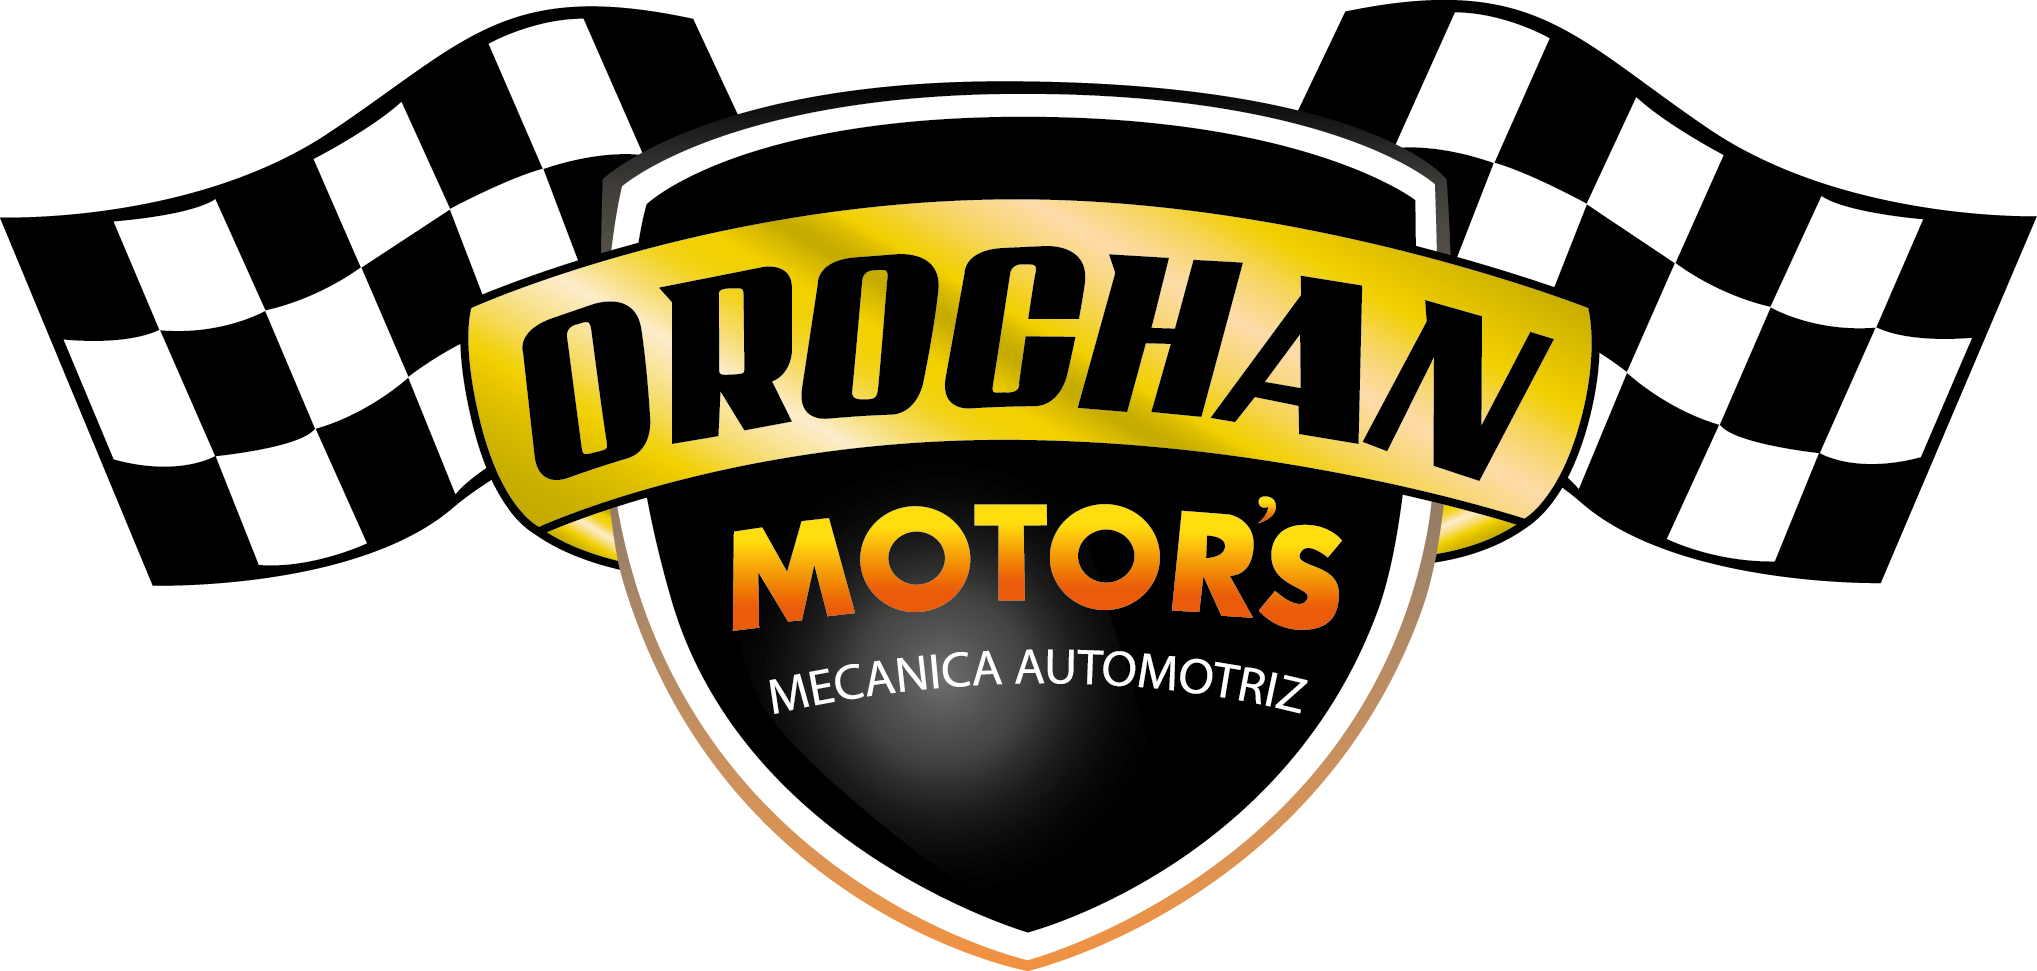 Orochan Motors